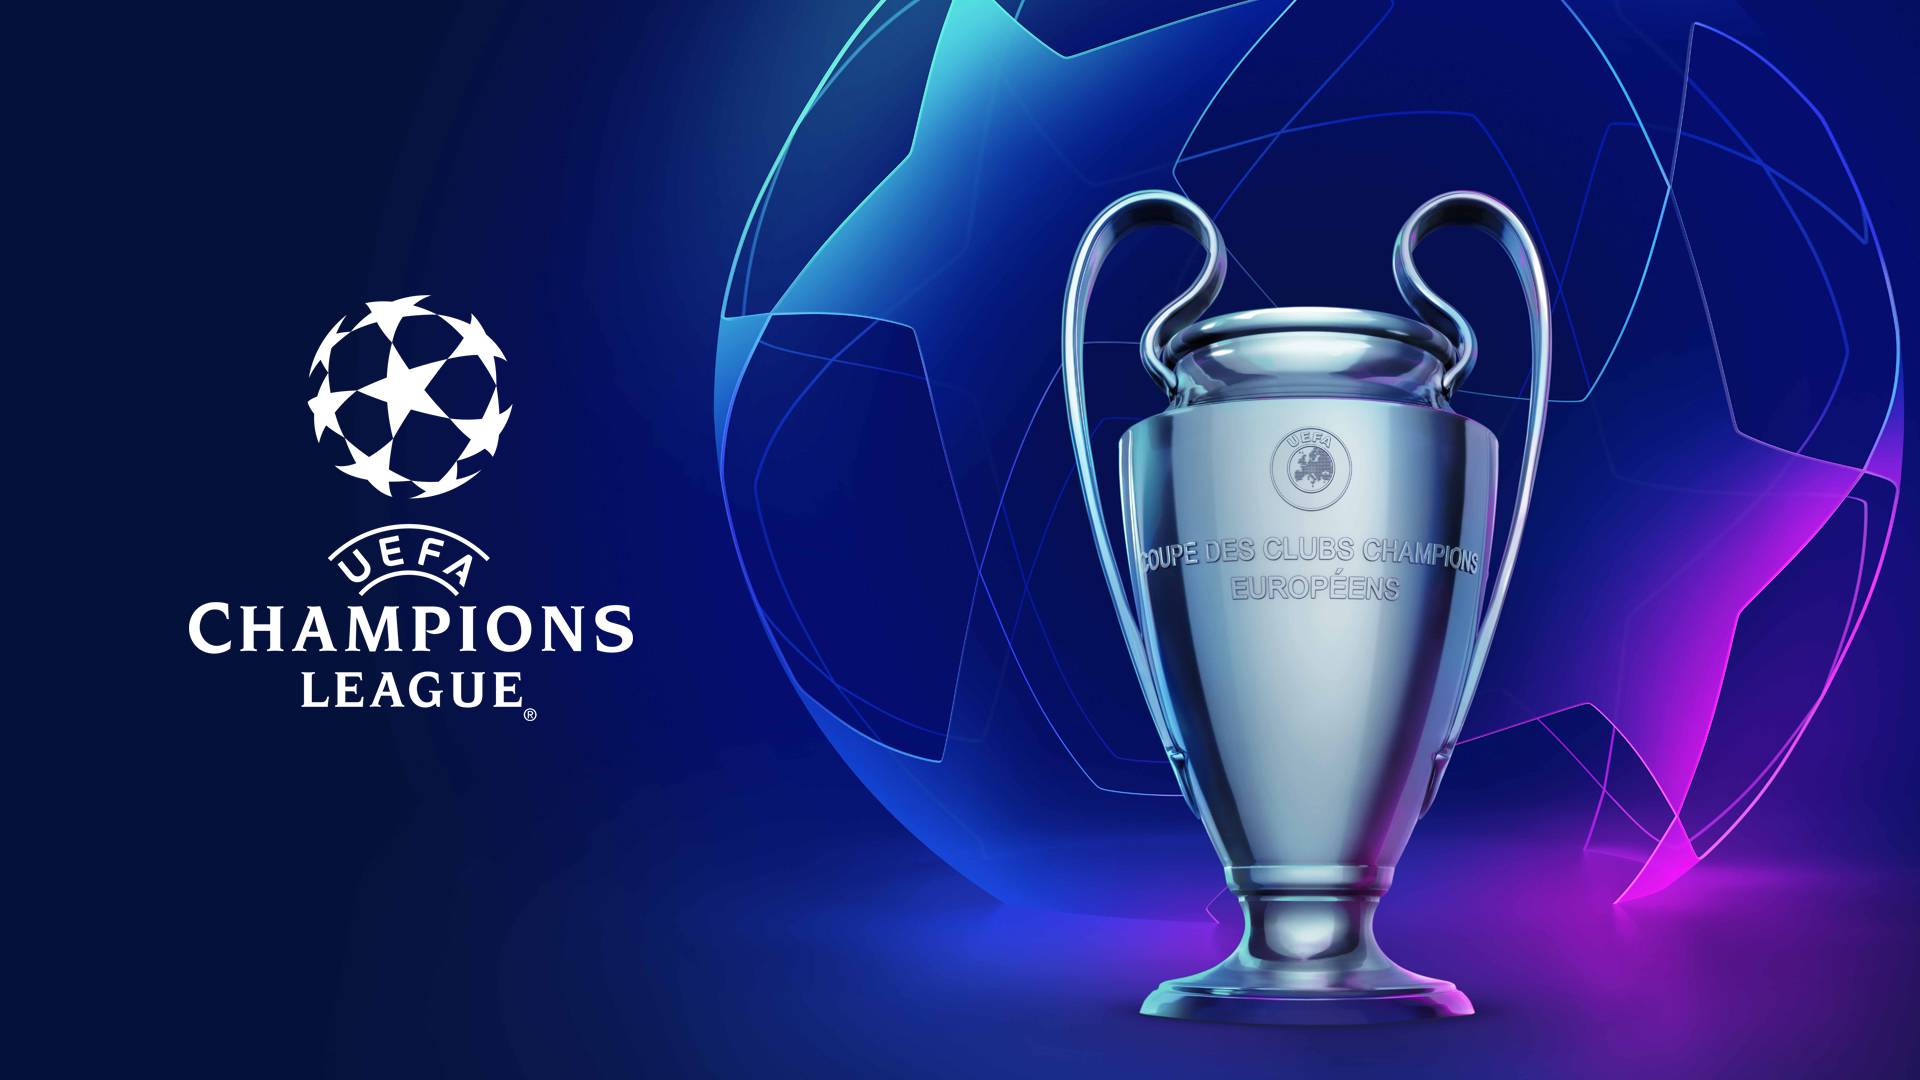 Champions League | l'Uefa rende ufficiali le date e gli stadi delle restanti partite del torneo